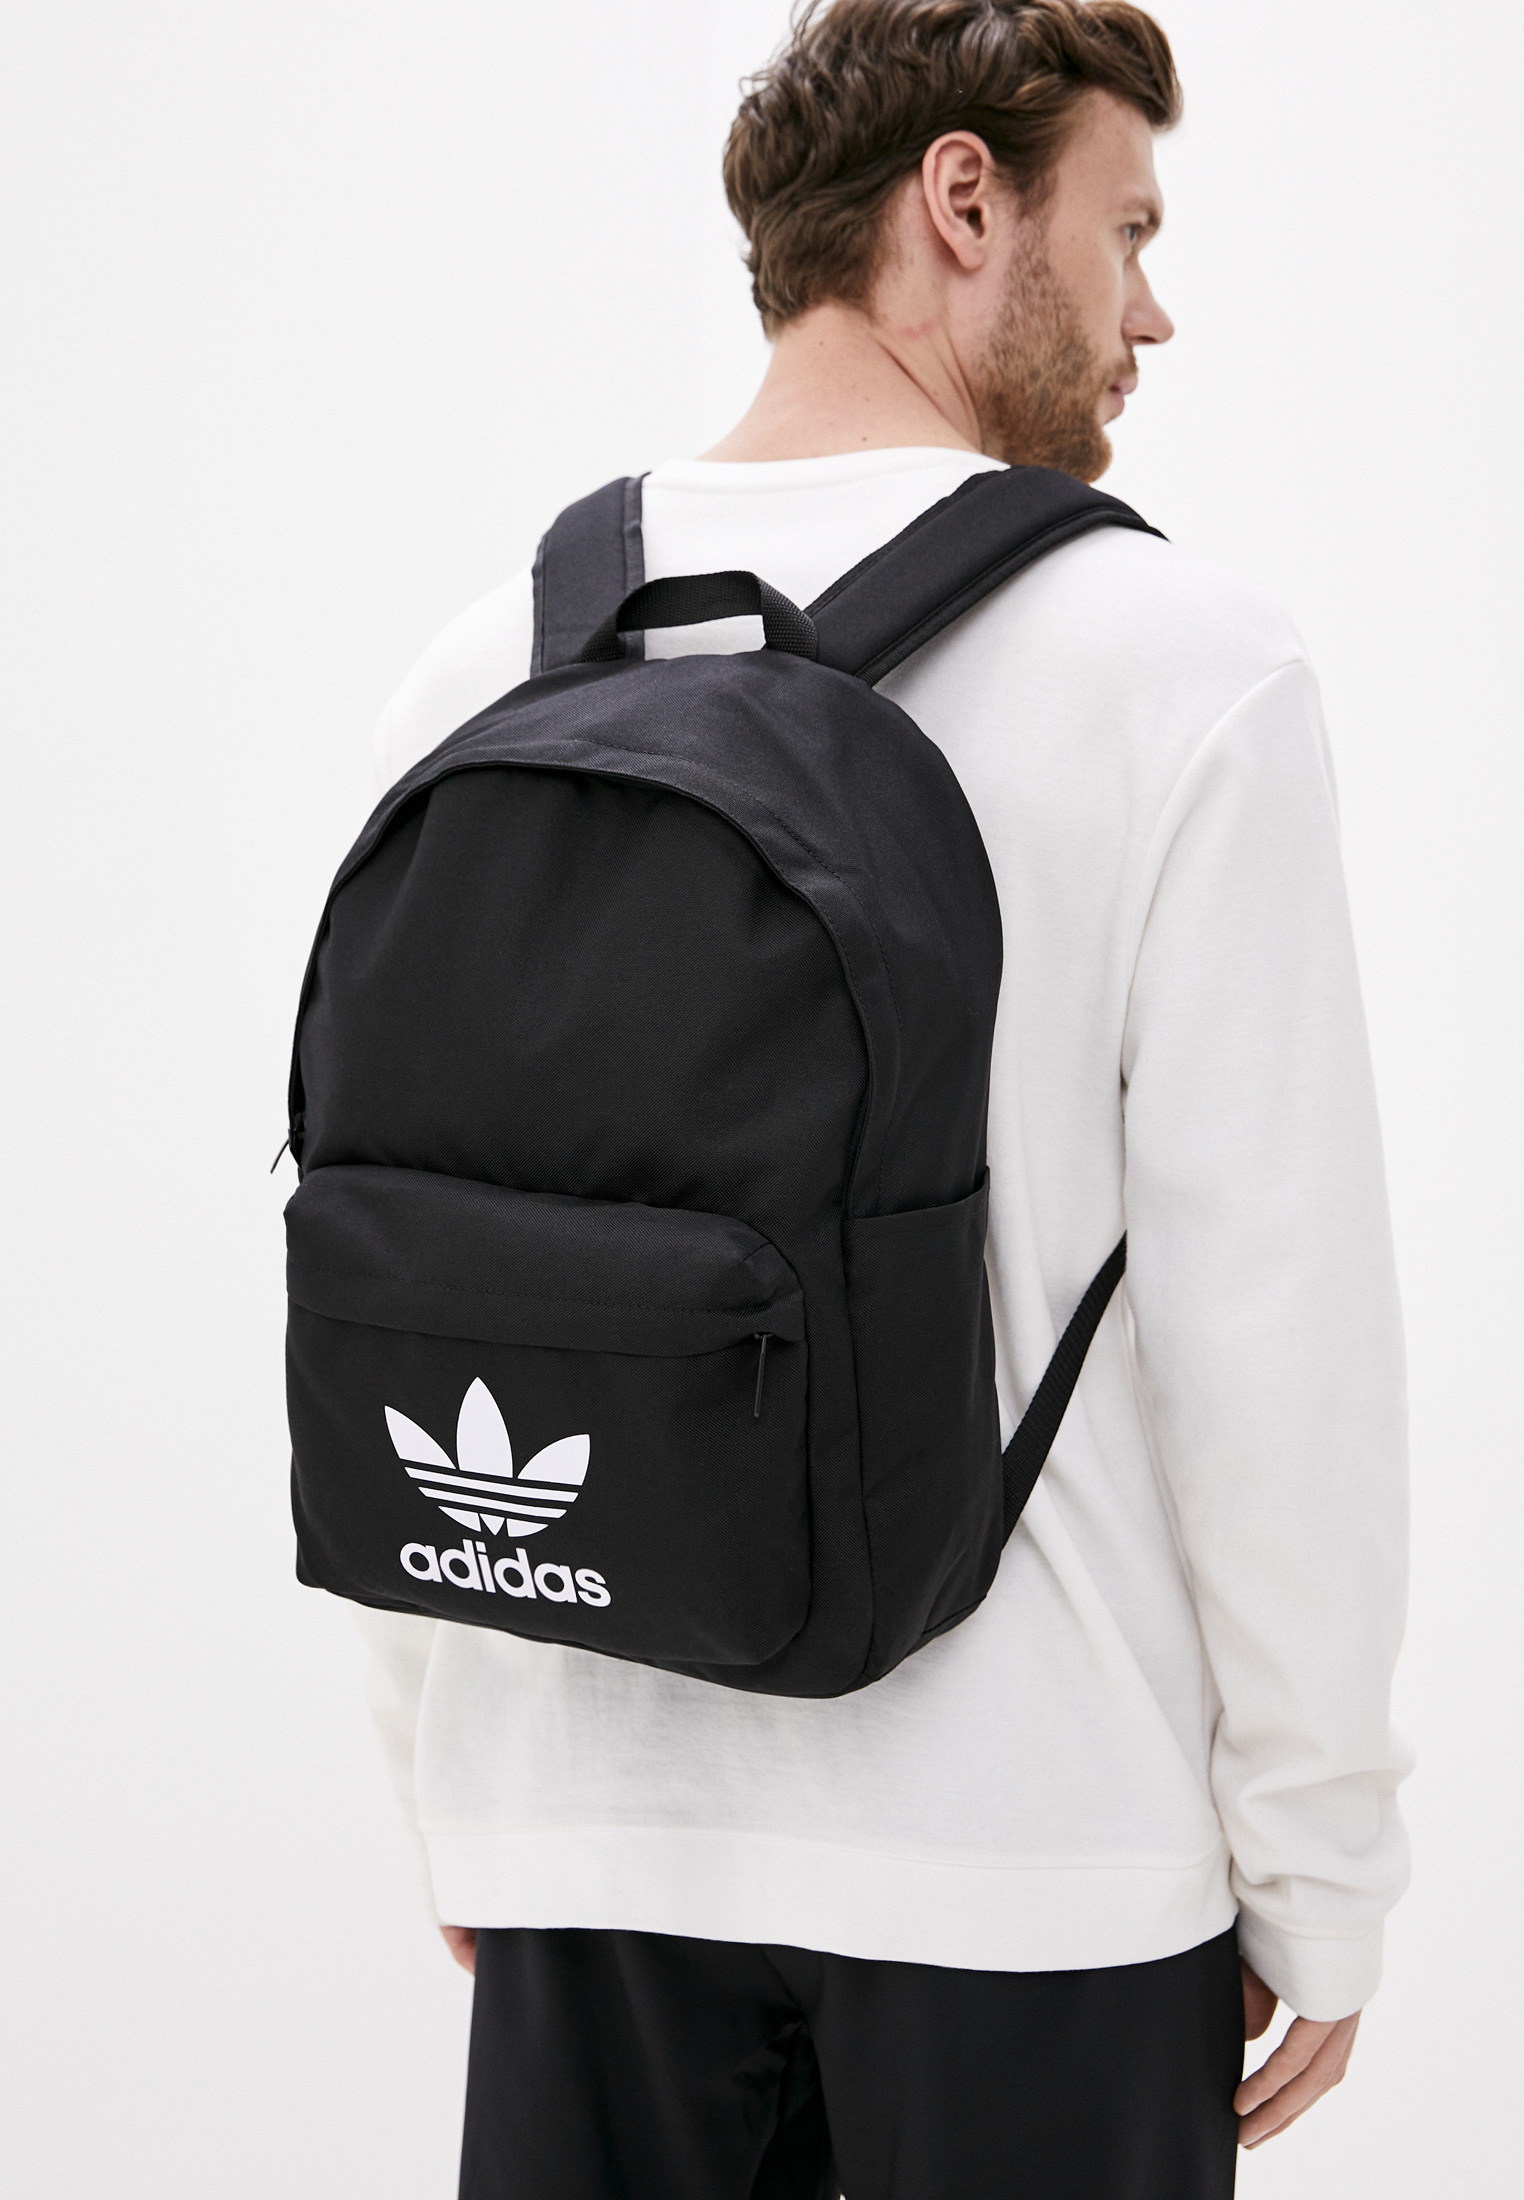 Спортивный рюкзак мужской Adidas Originals (Адидас Ориджиналс) GD4556  купить за 2089 руб.